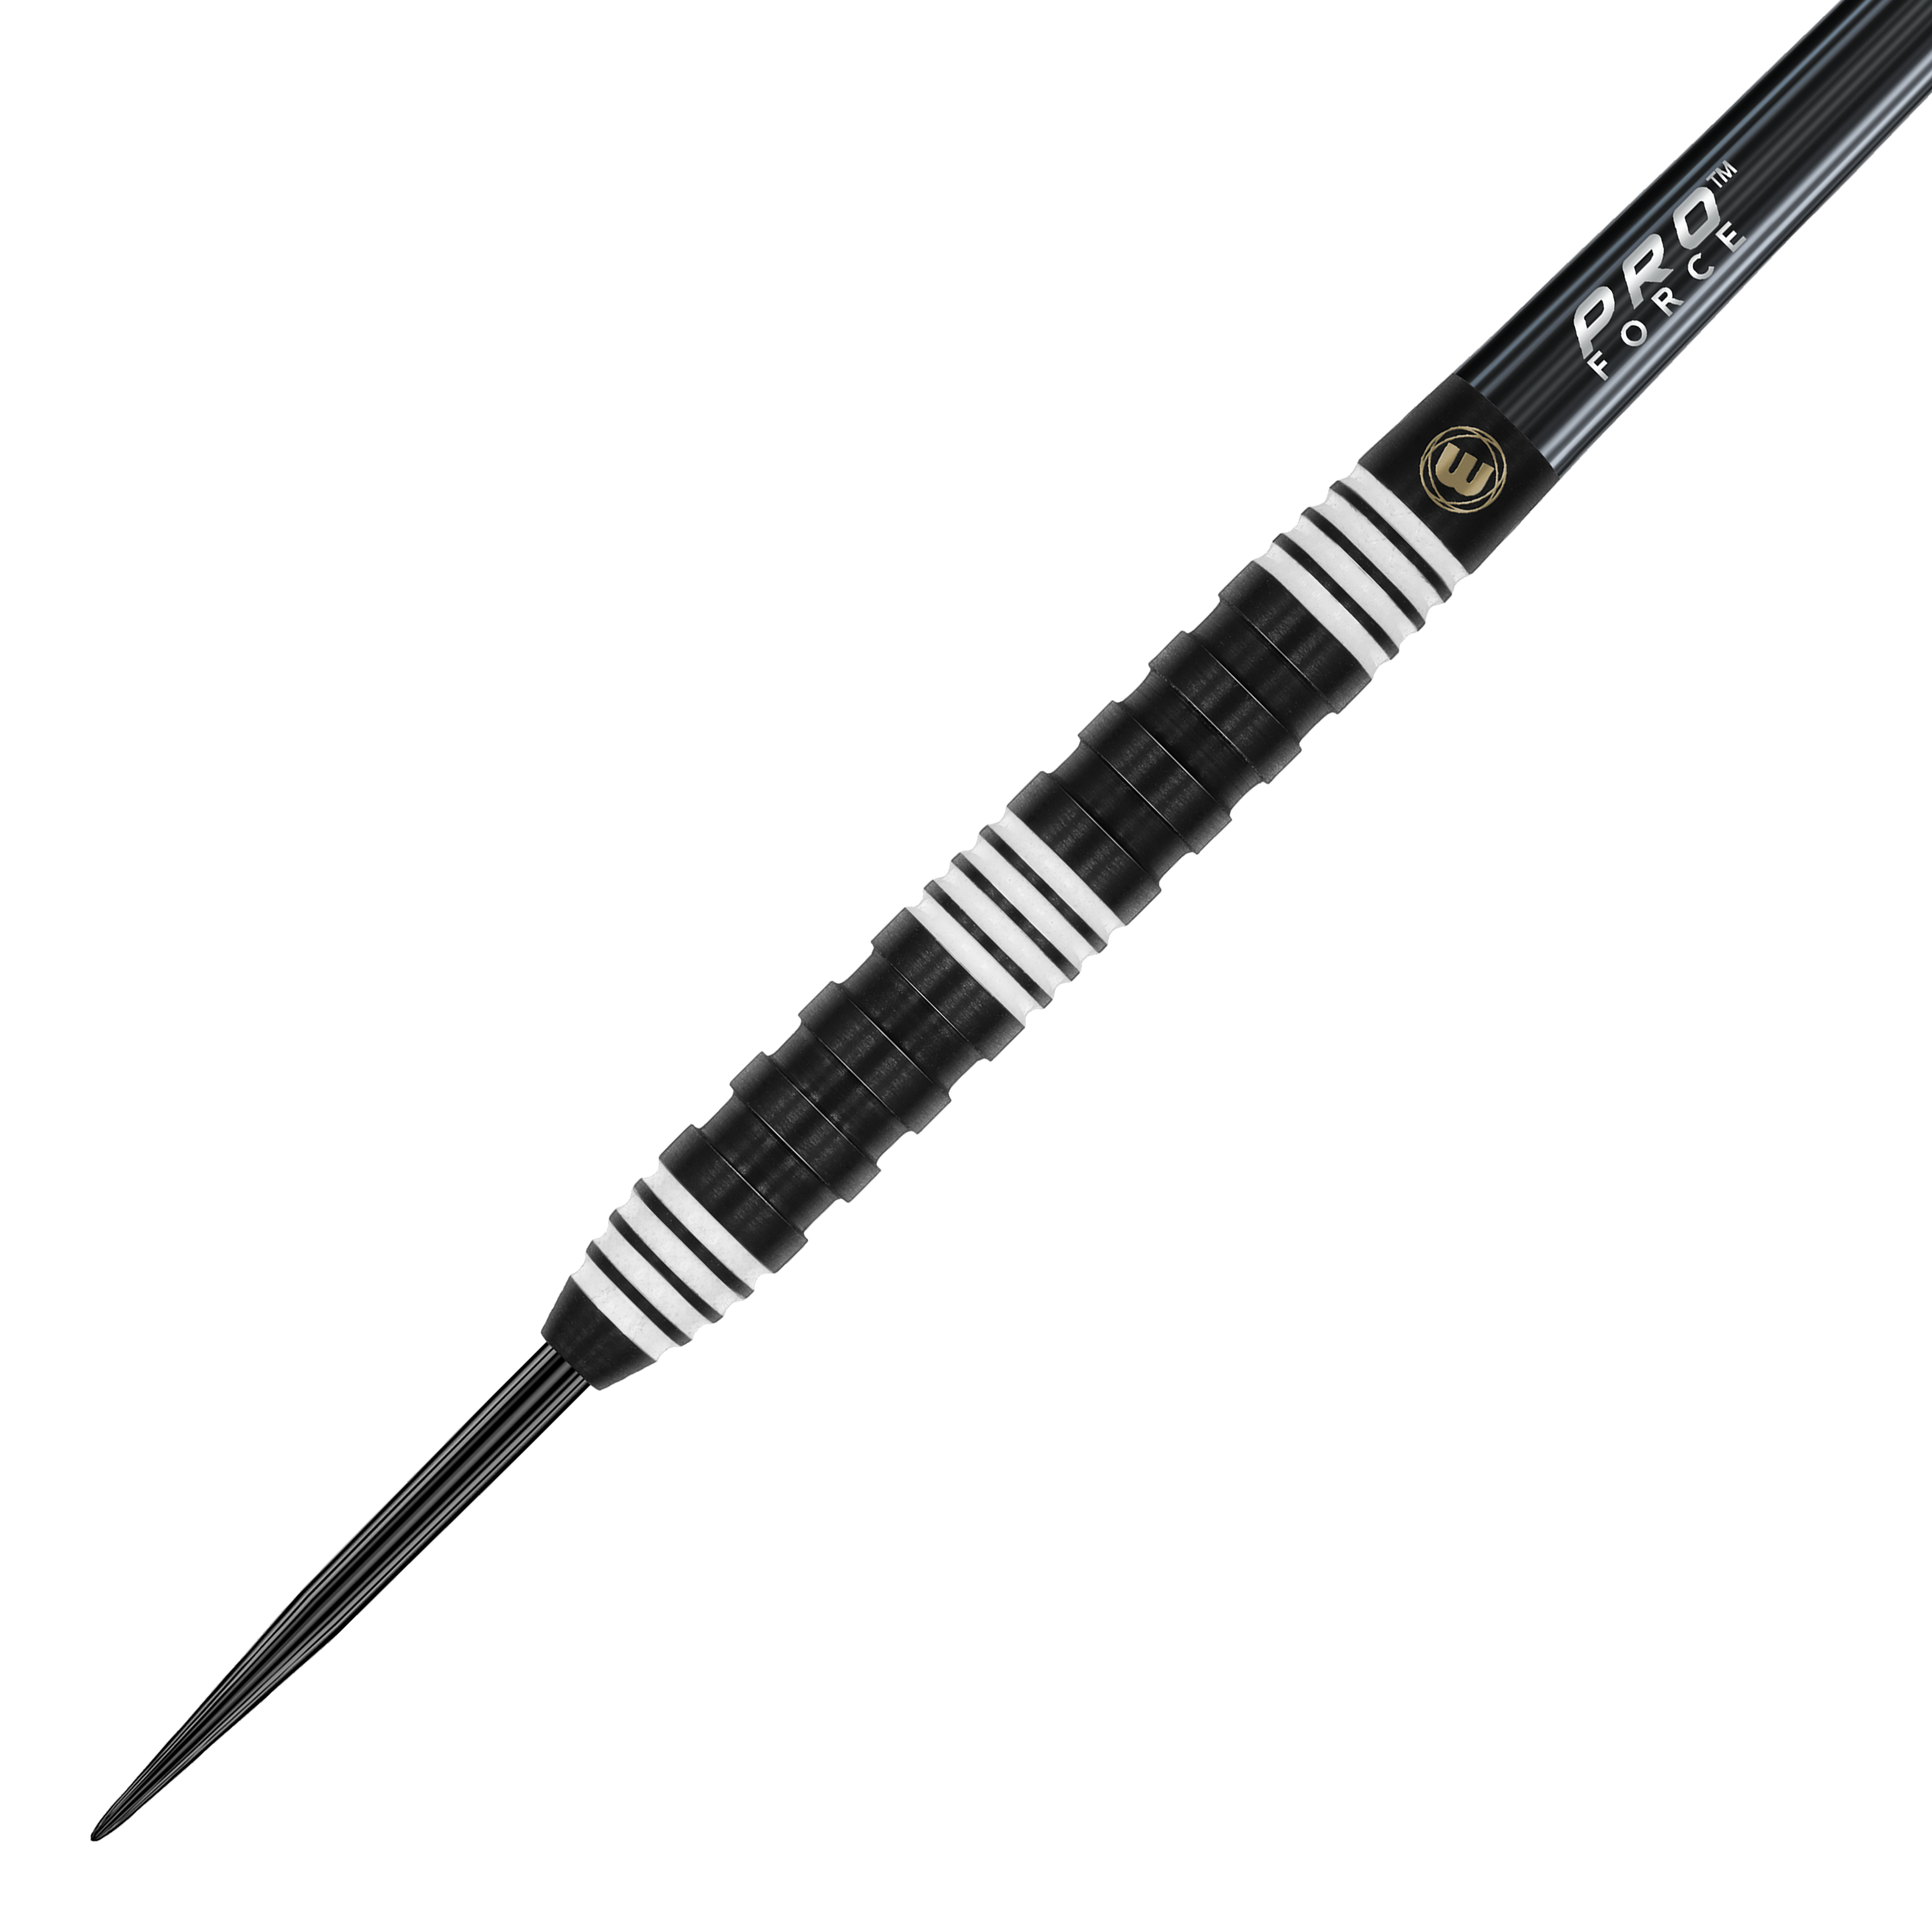 Winmau Danny Noppert 85 Pro-Series steel darts